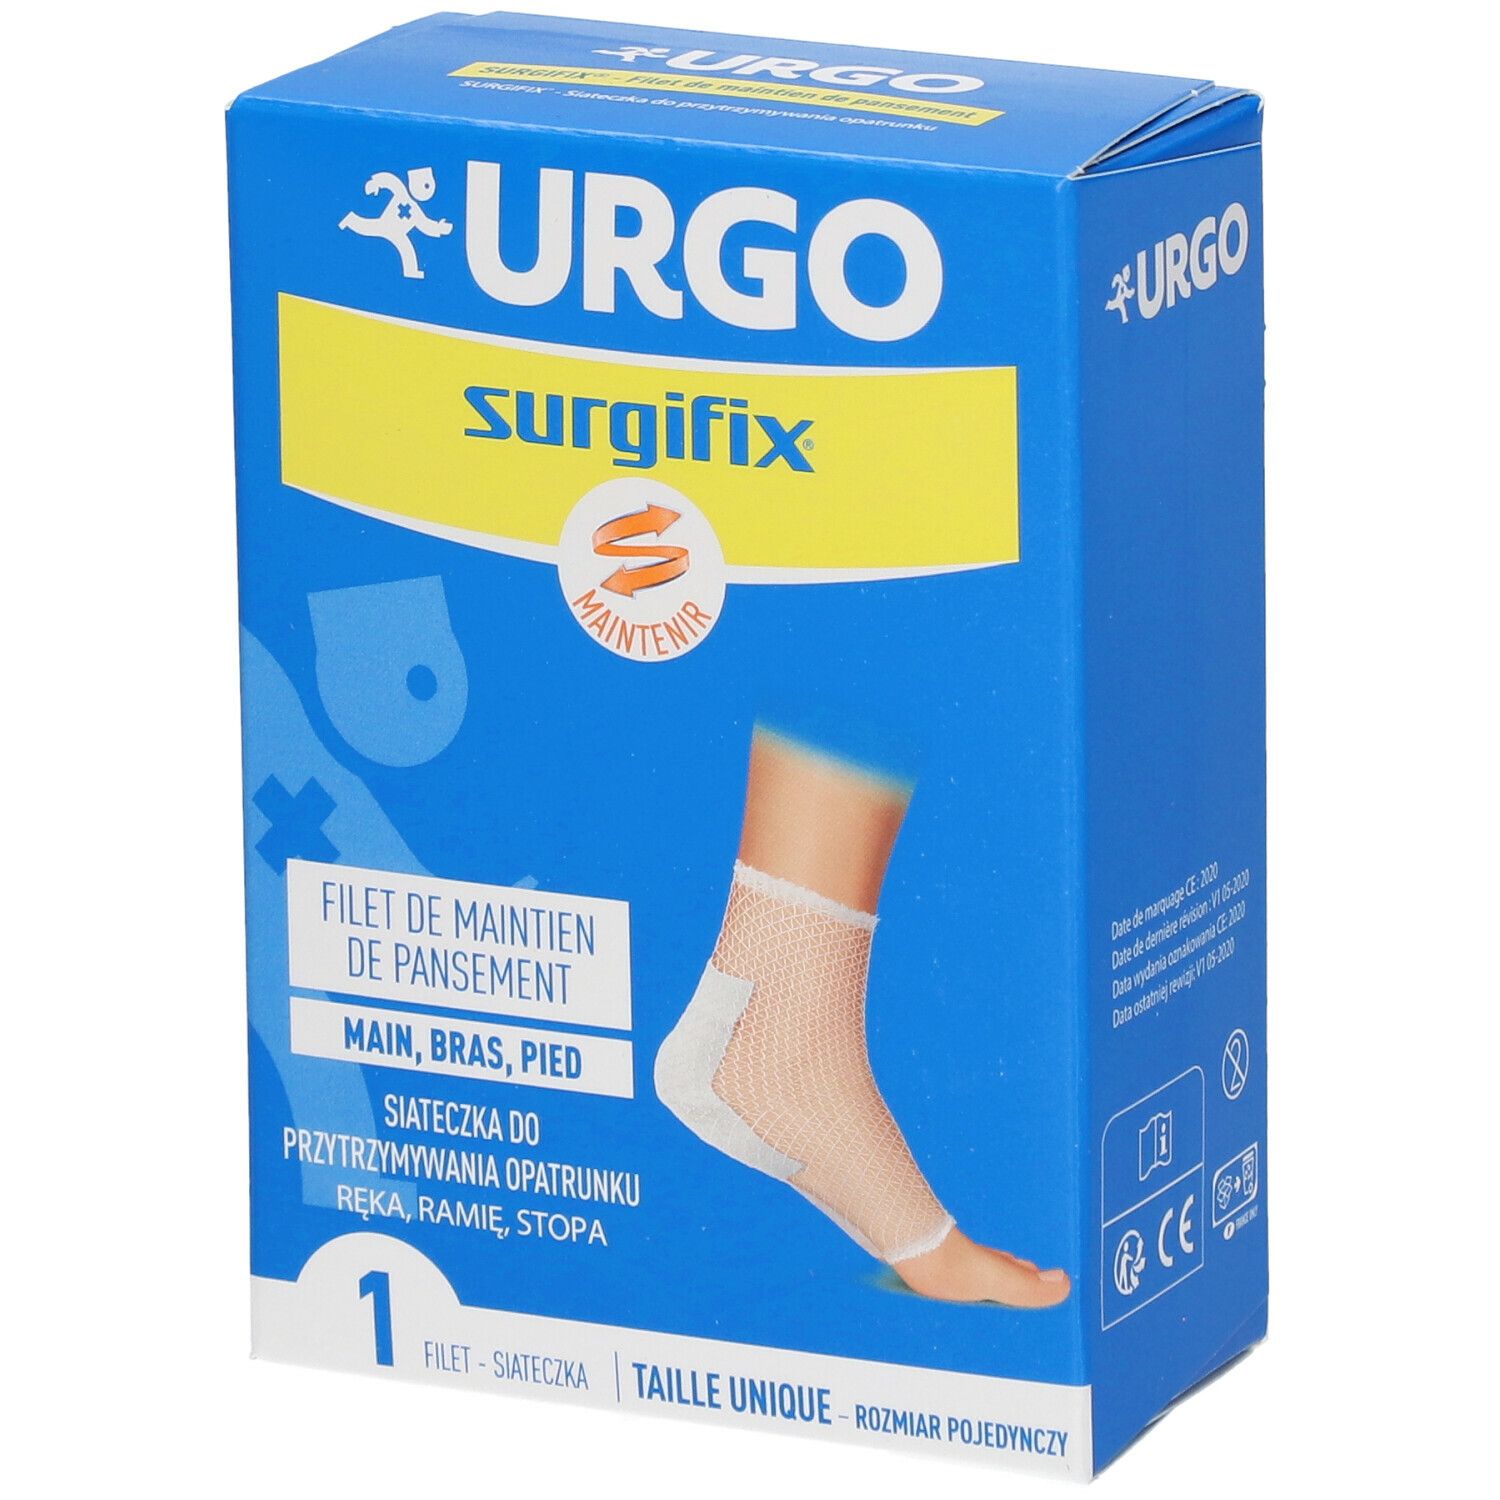 Urgo Surgifix® Filet de Maintien de pansement Taille 5 Main-bras-pied